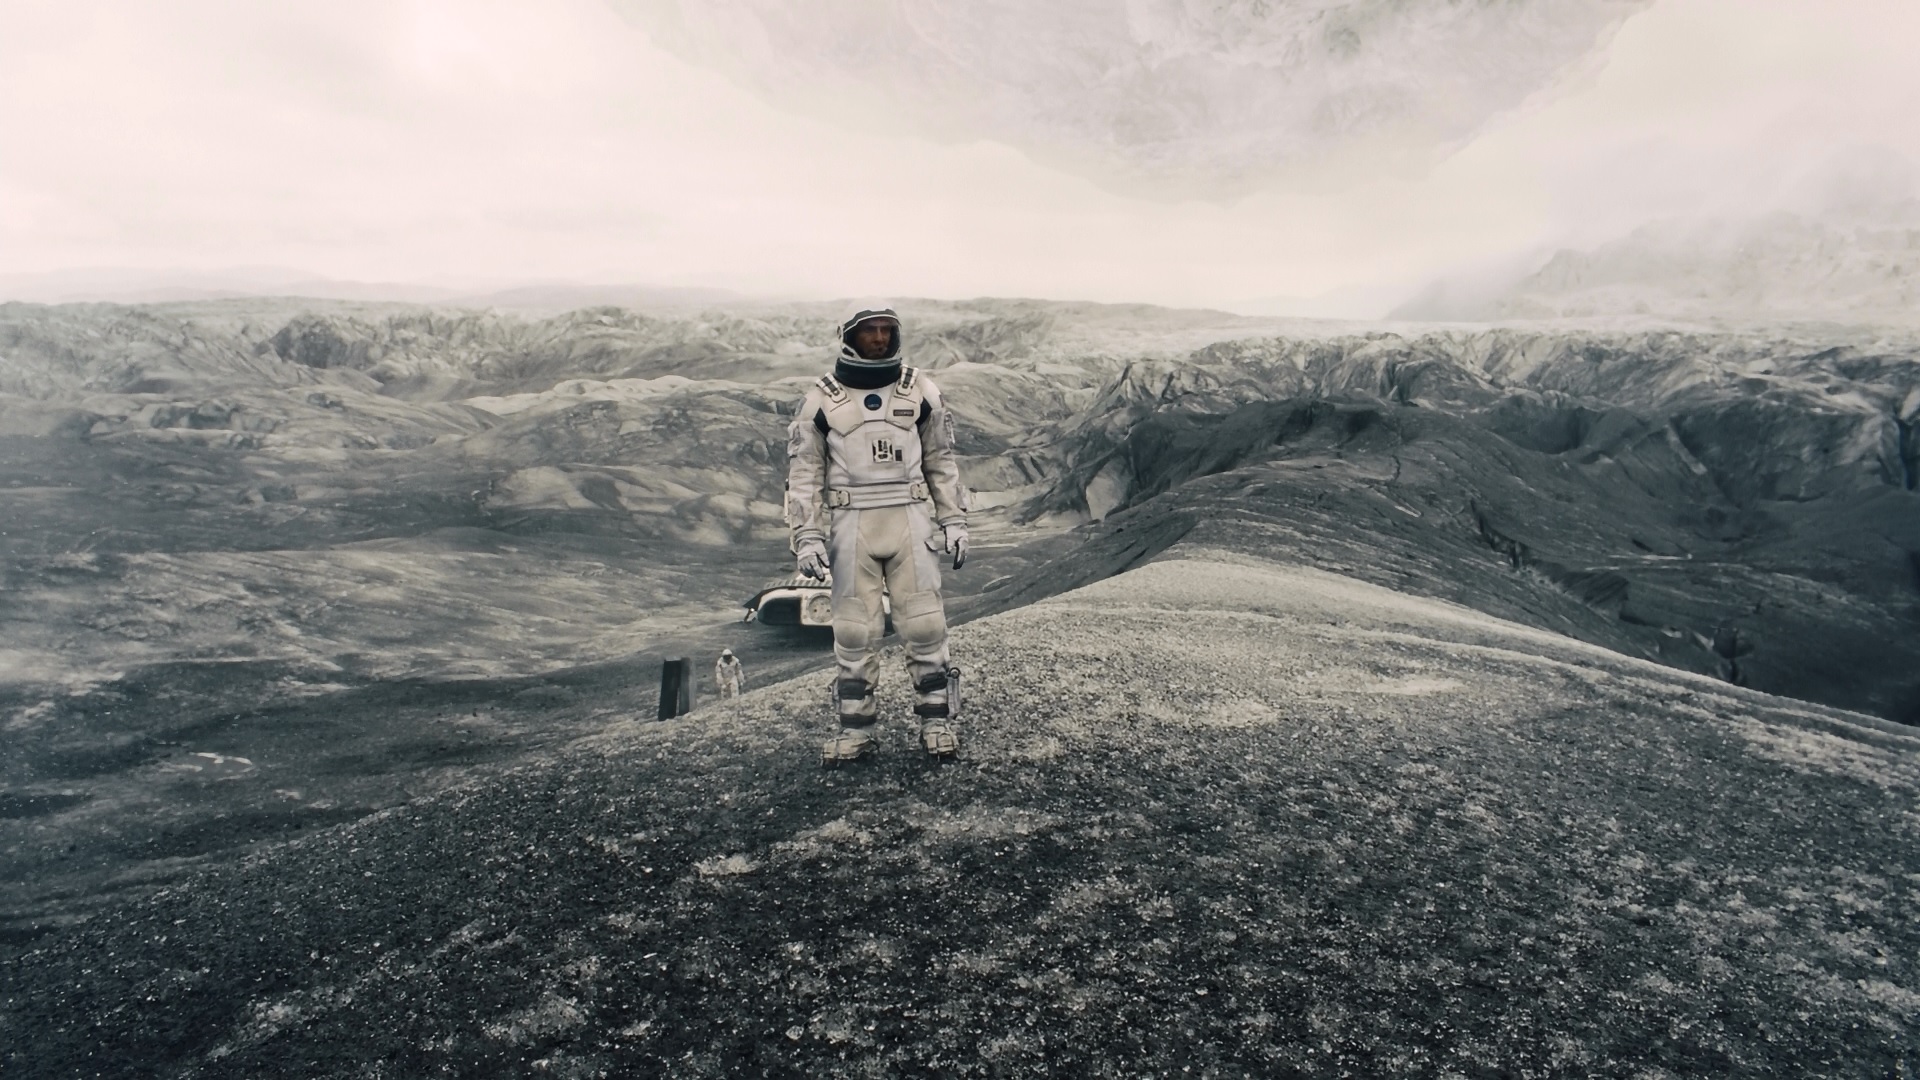 L'astronauta Joseph Cooper sul pianeta del Dr. Mann in una scena del film Interstellar, ambientato in Islanda.